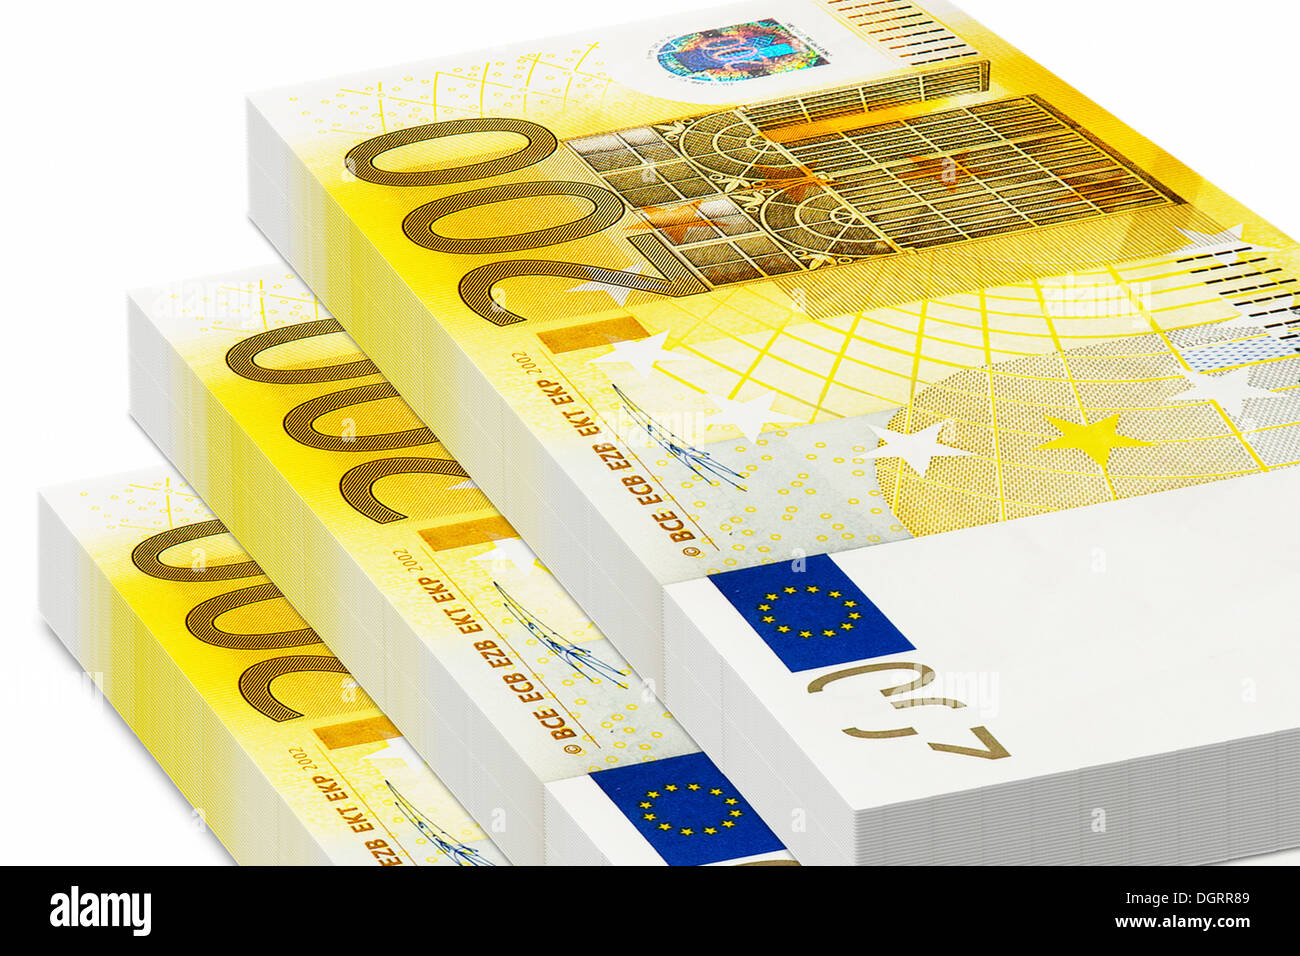 Rimpelingen volgorde teer Bundles of 200 euro bank notes Stock Photo - Alamy